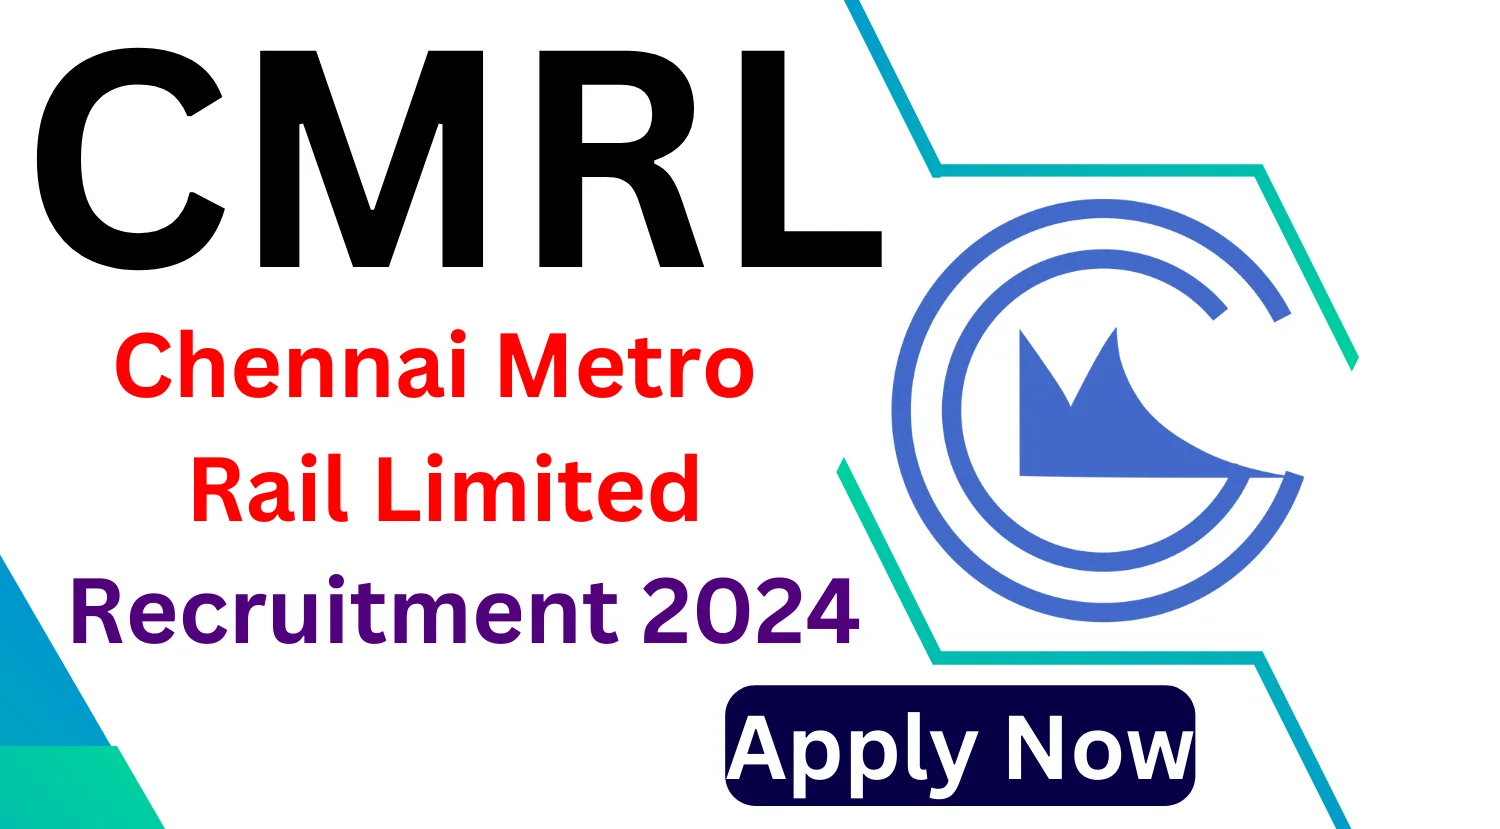 CMRL Recruitment 2024